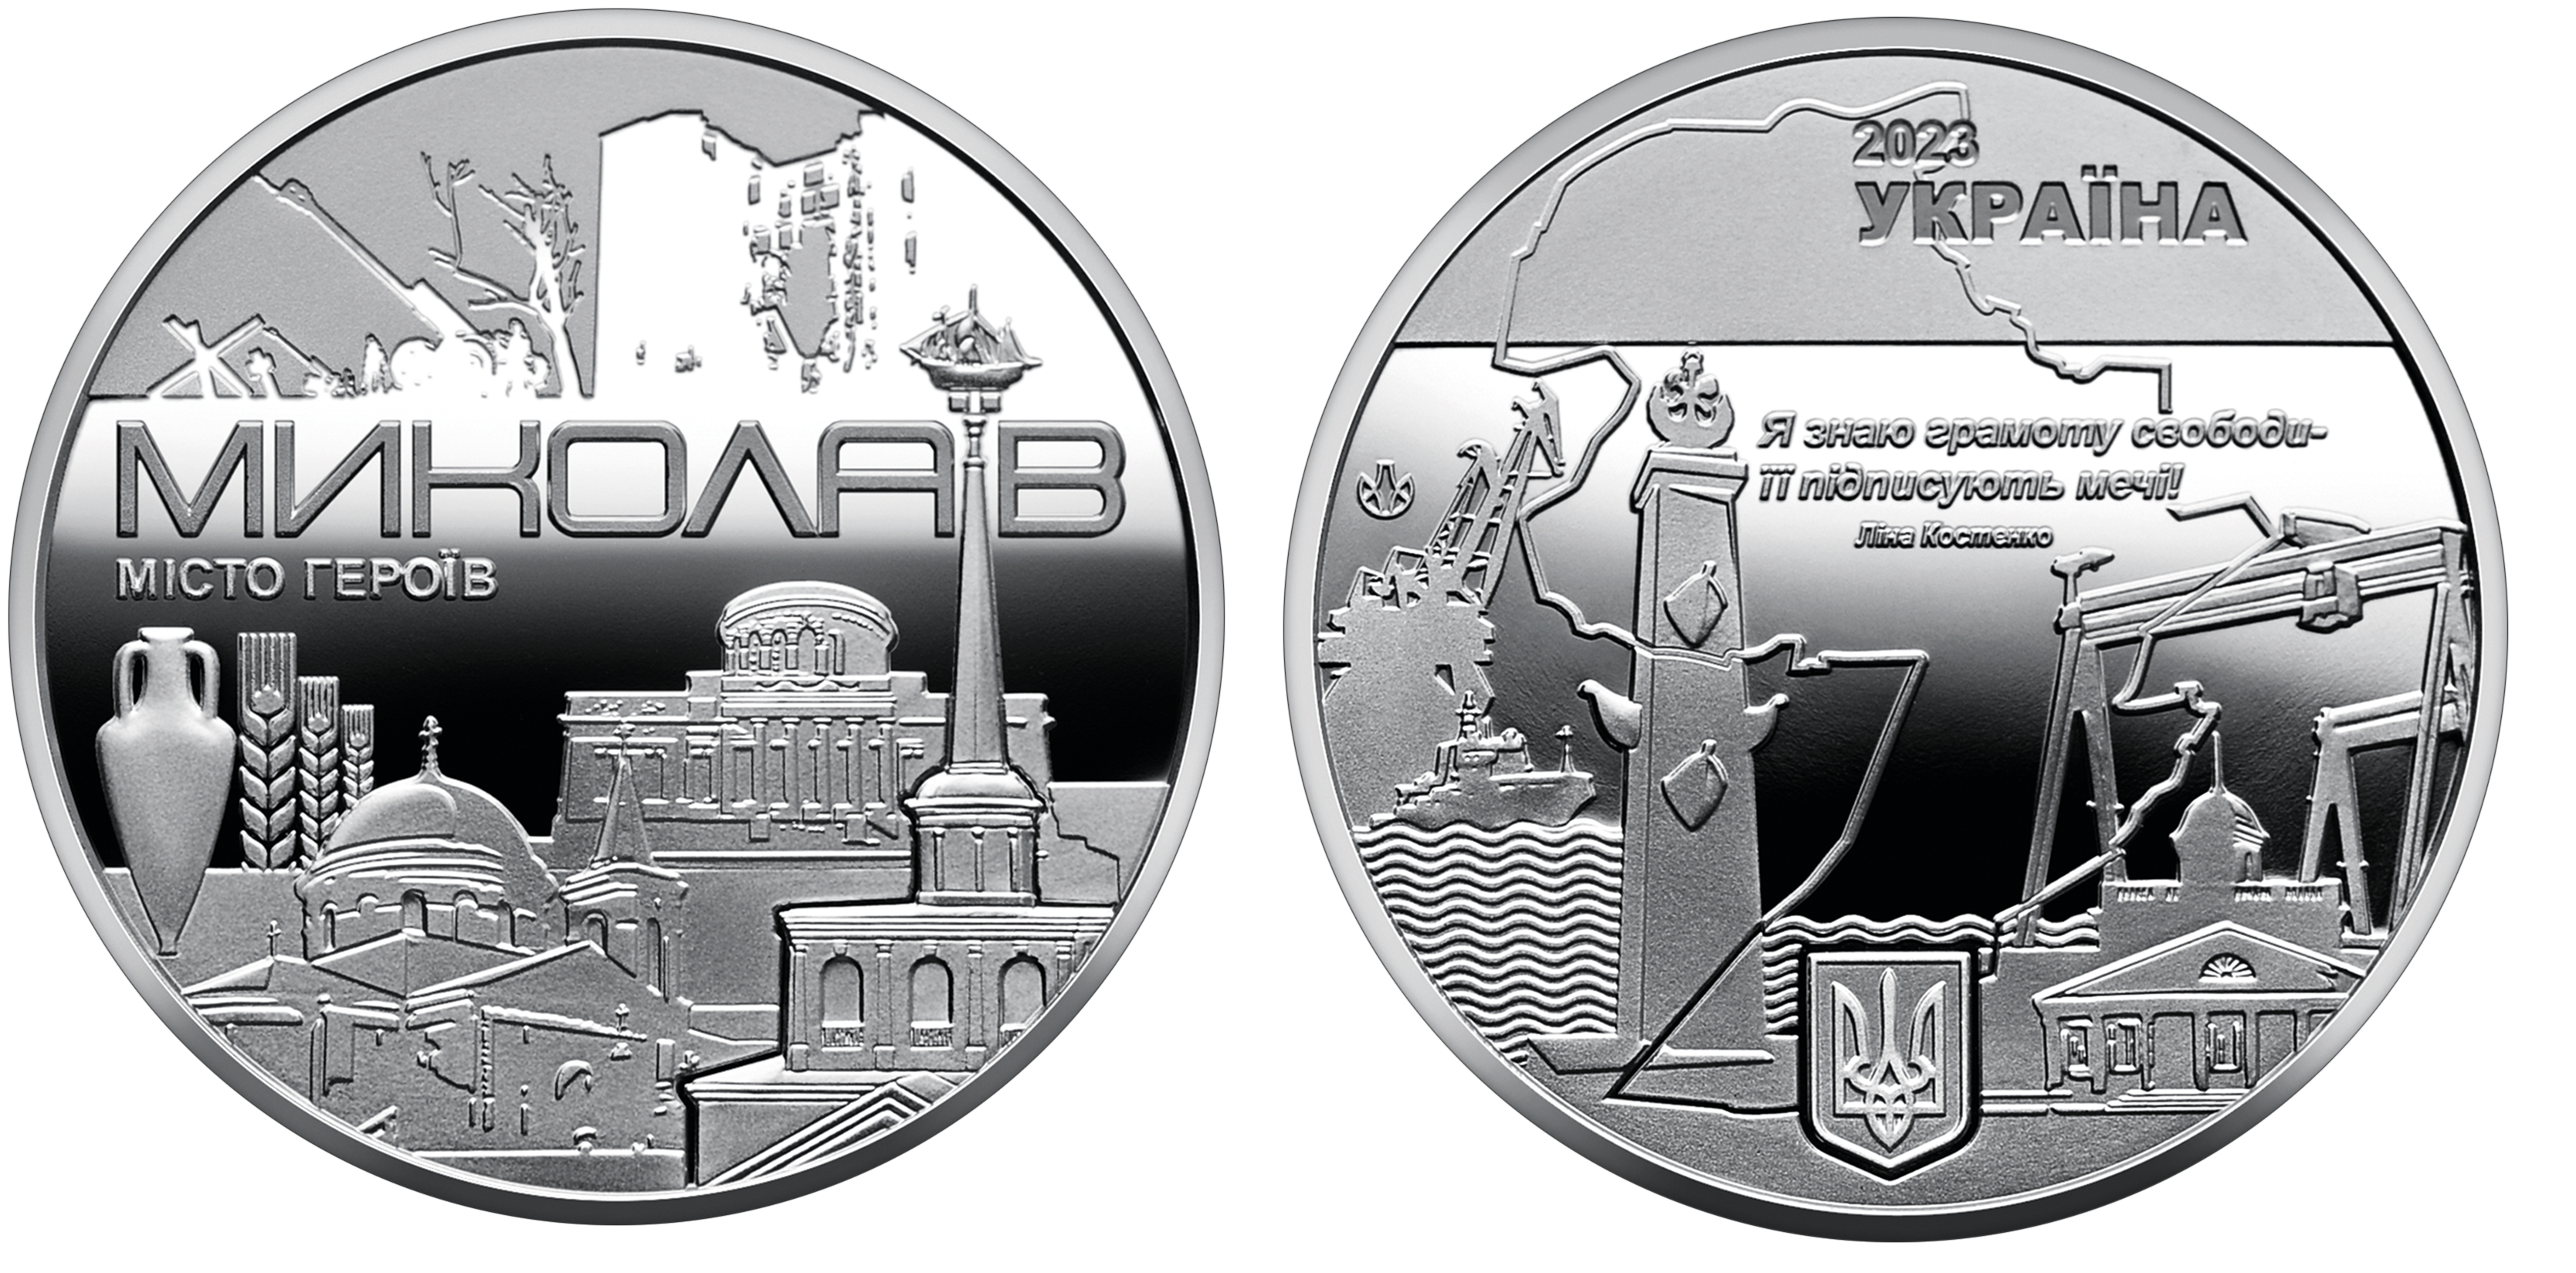 Продаж ювілейних монет від МТБ БАНК • купити ювілейні монети в Україні в MTB БАНК - фото 9 - mtb.ua